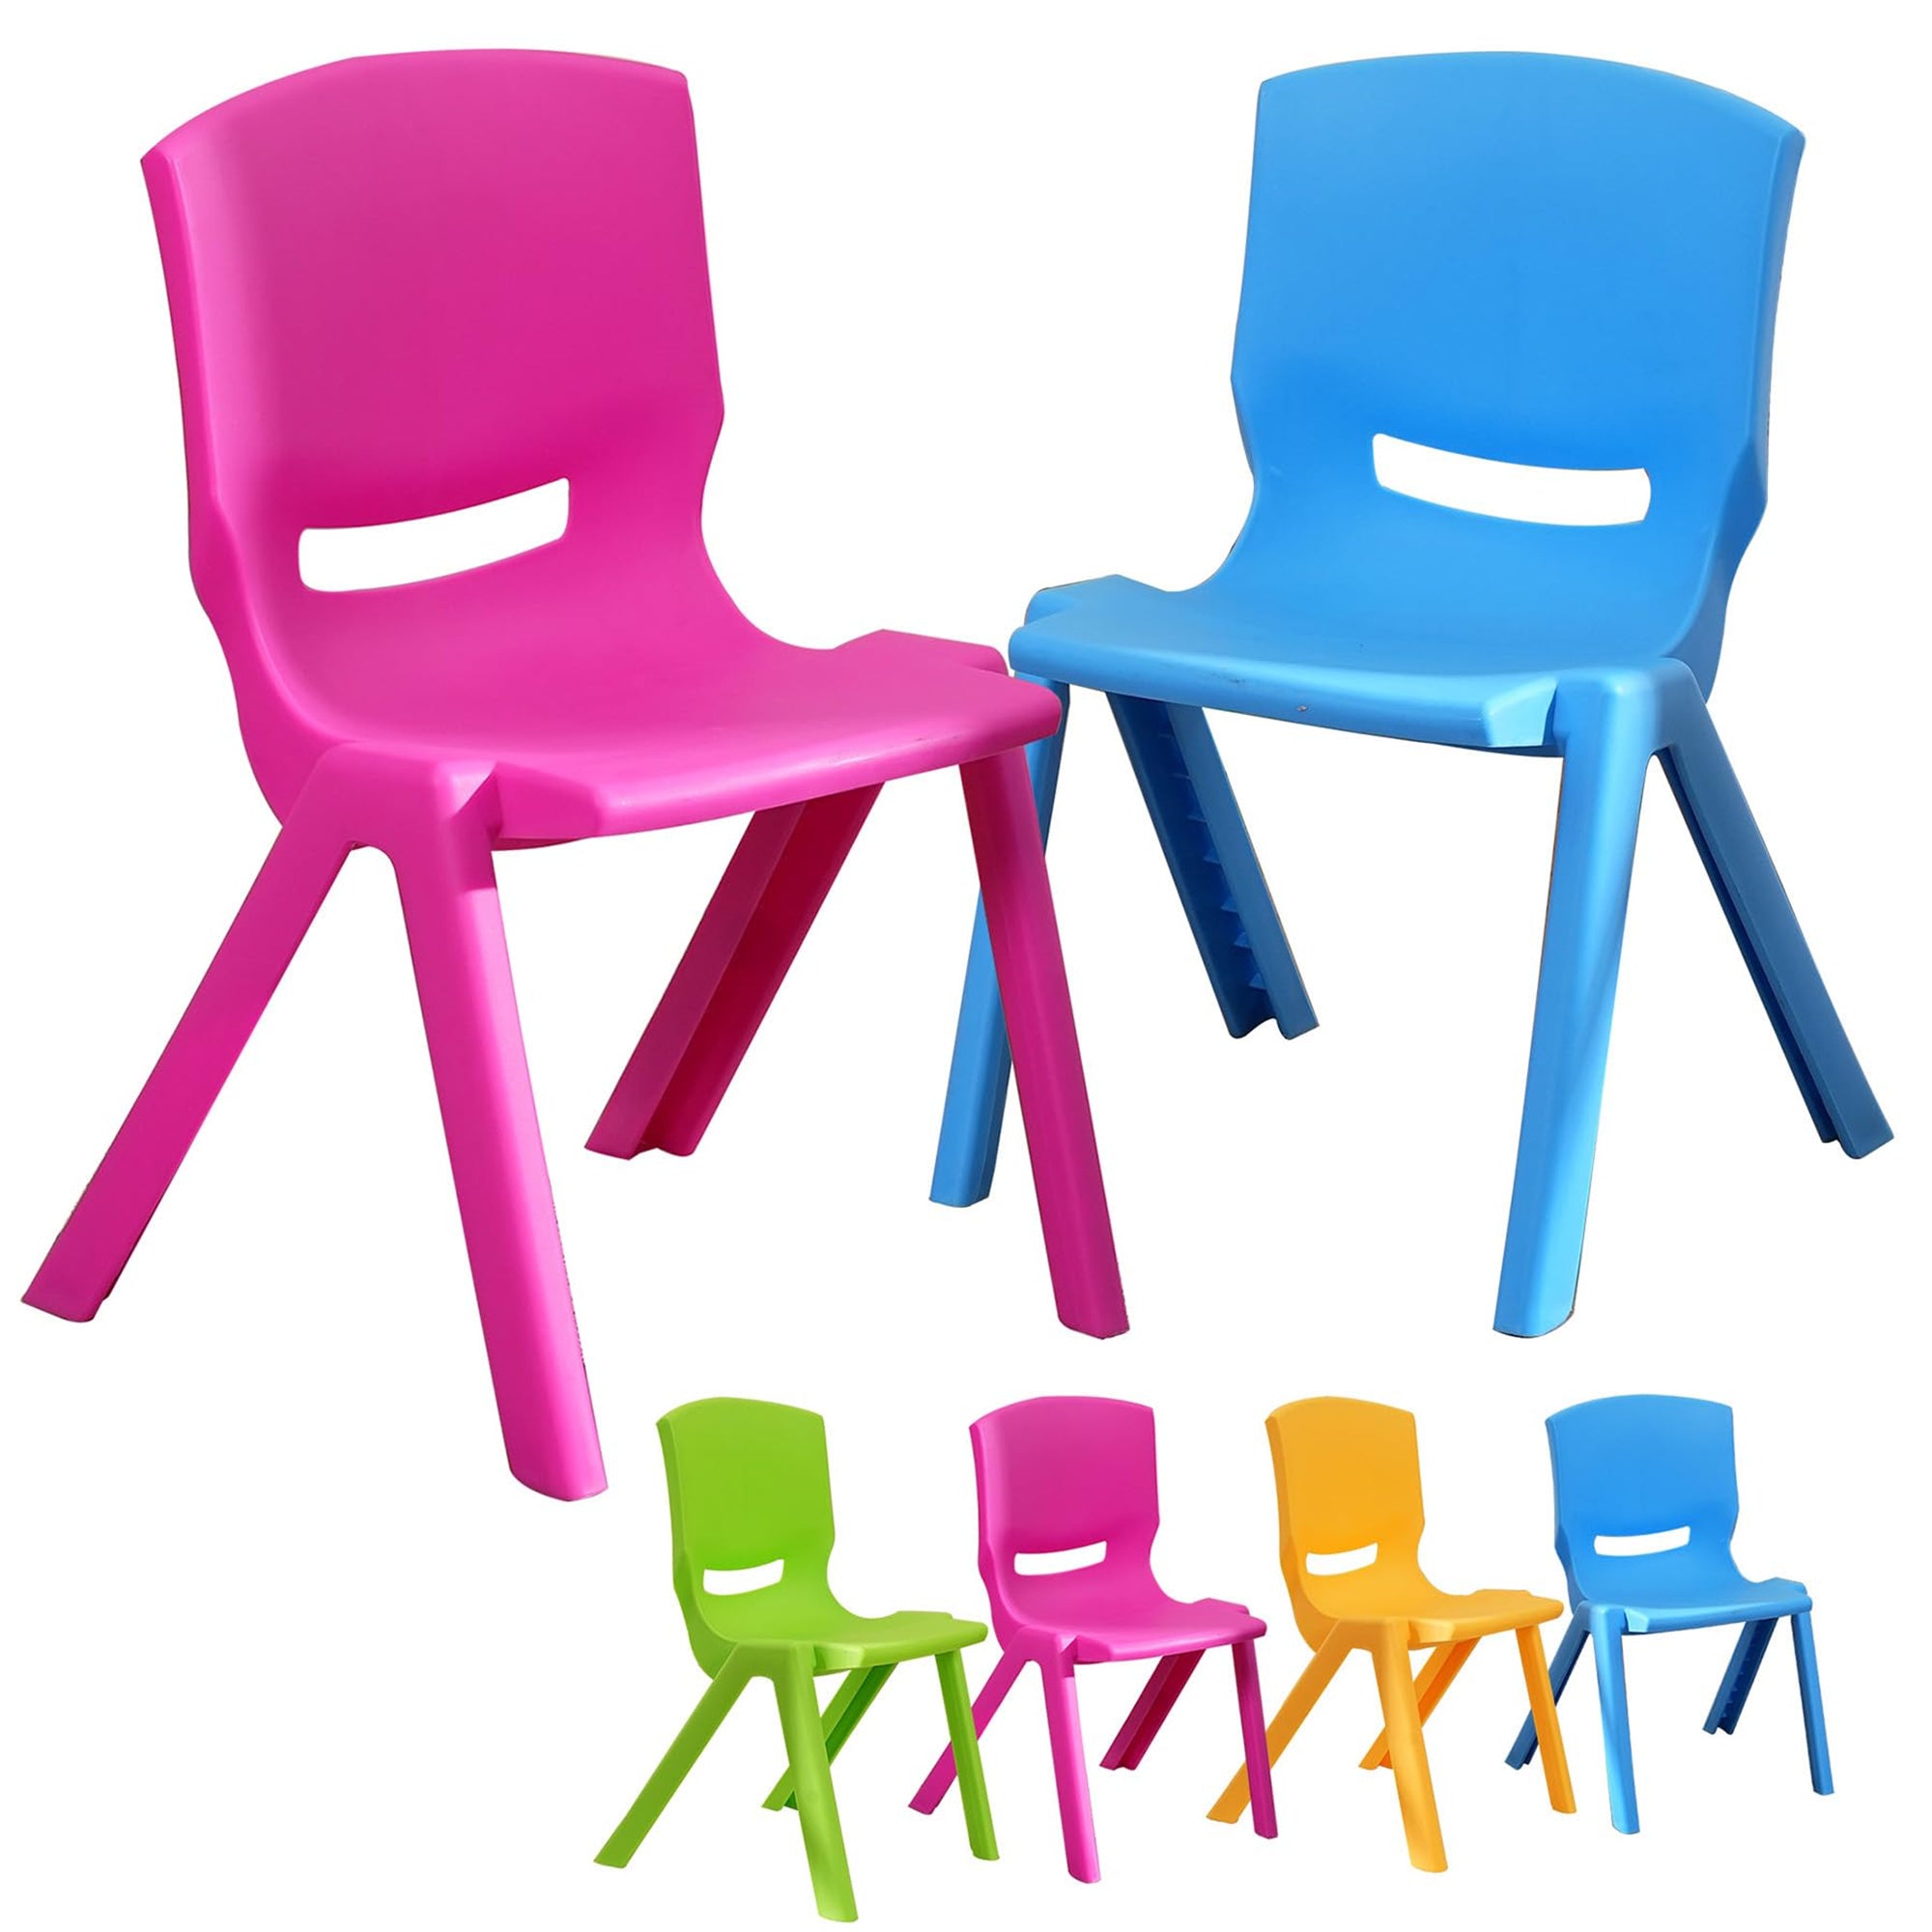 Kids Chair,Children Lightweight Plastic 4 Chairs